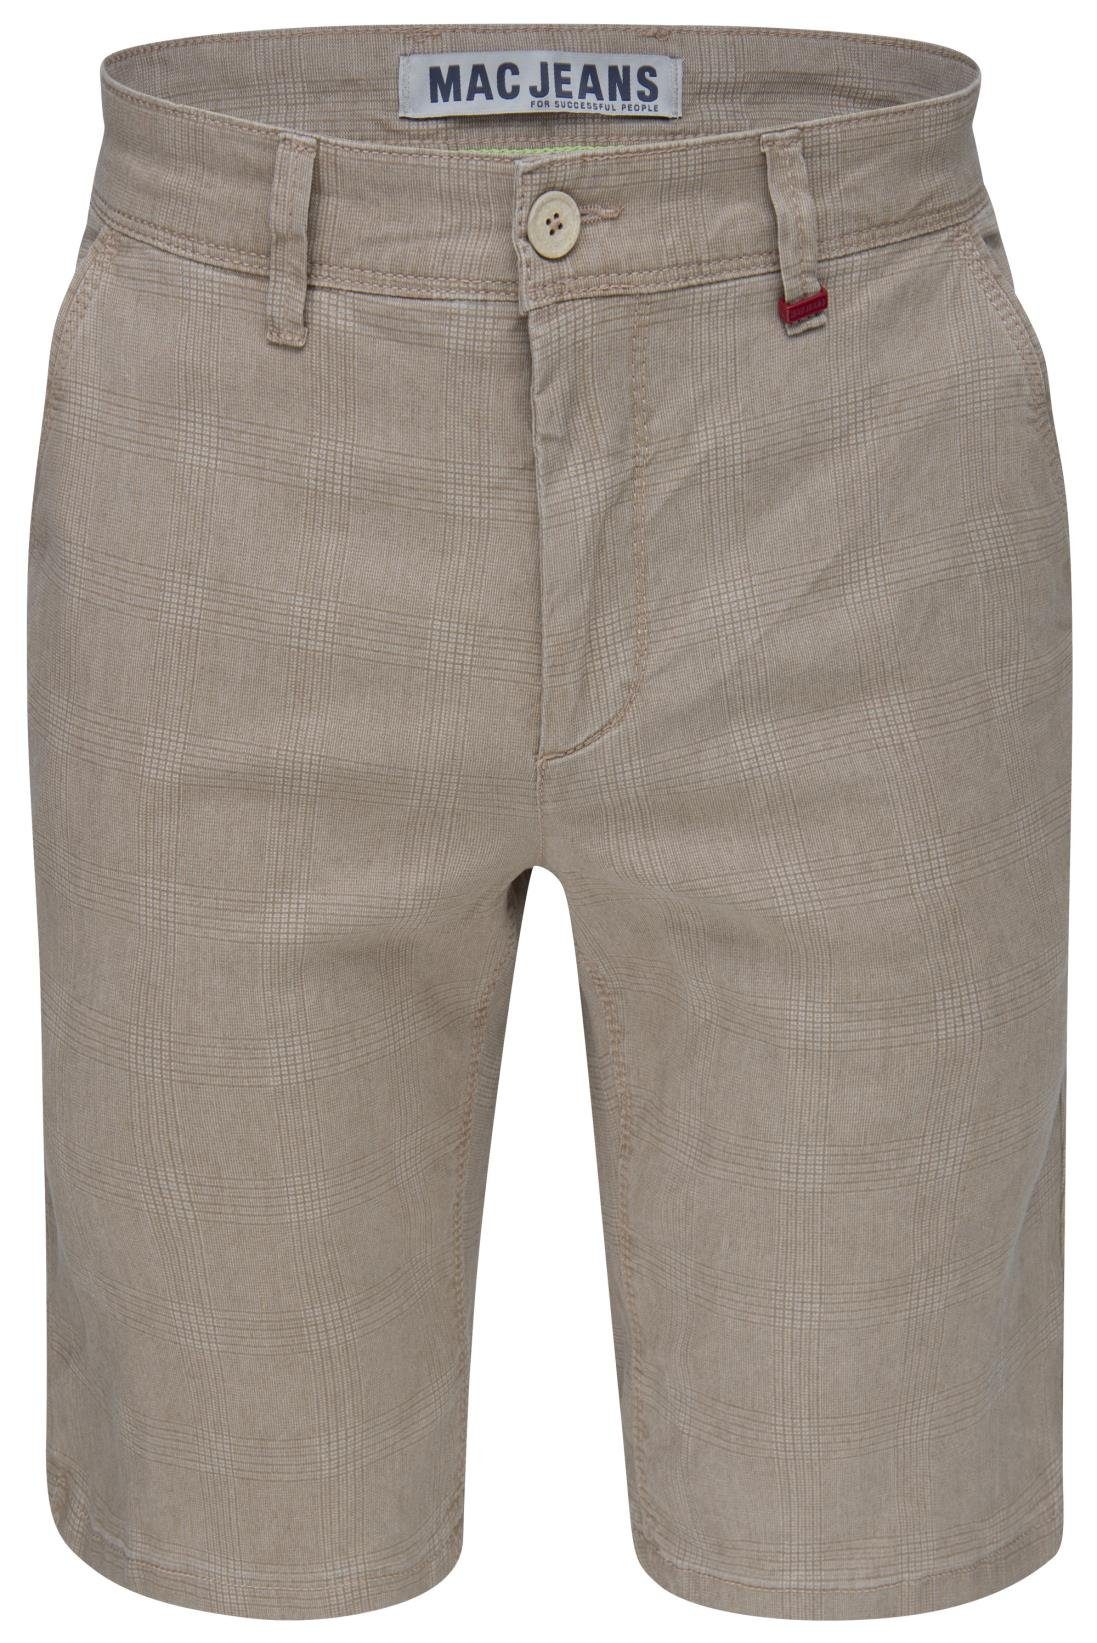 5-Pocket-Jeans BERMUDA LENNY 6392-00-0654L-203K pattern beige MAC MAC